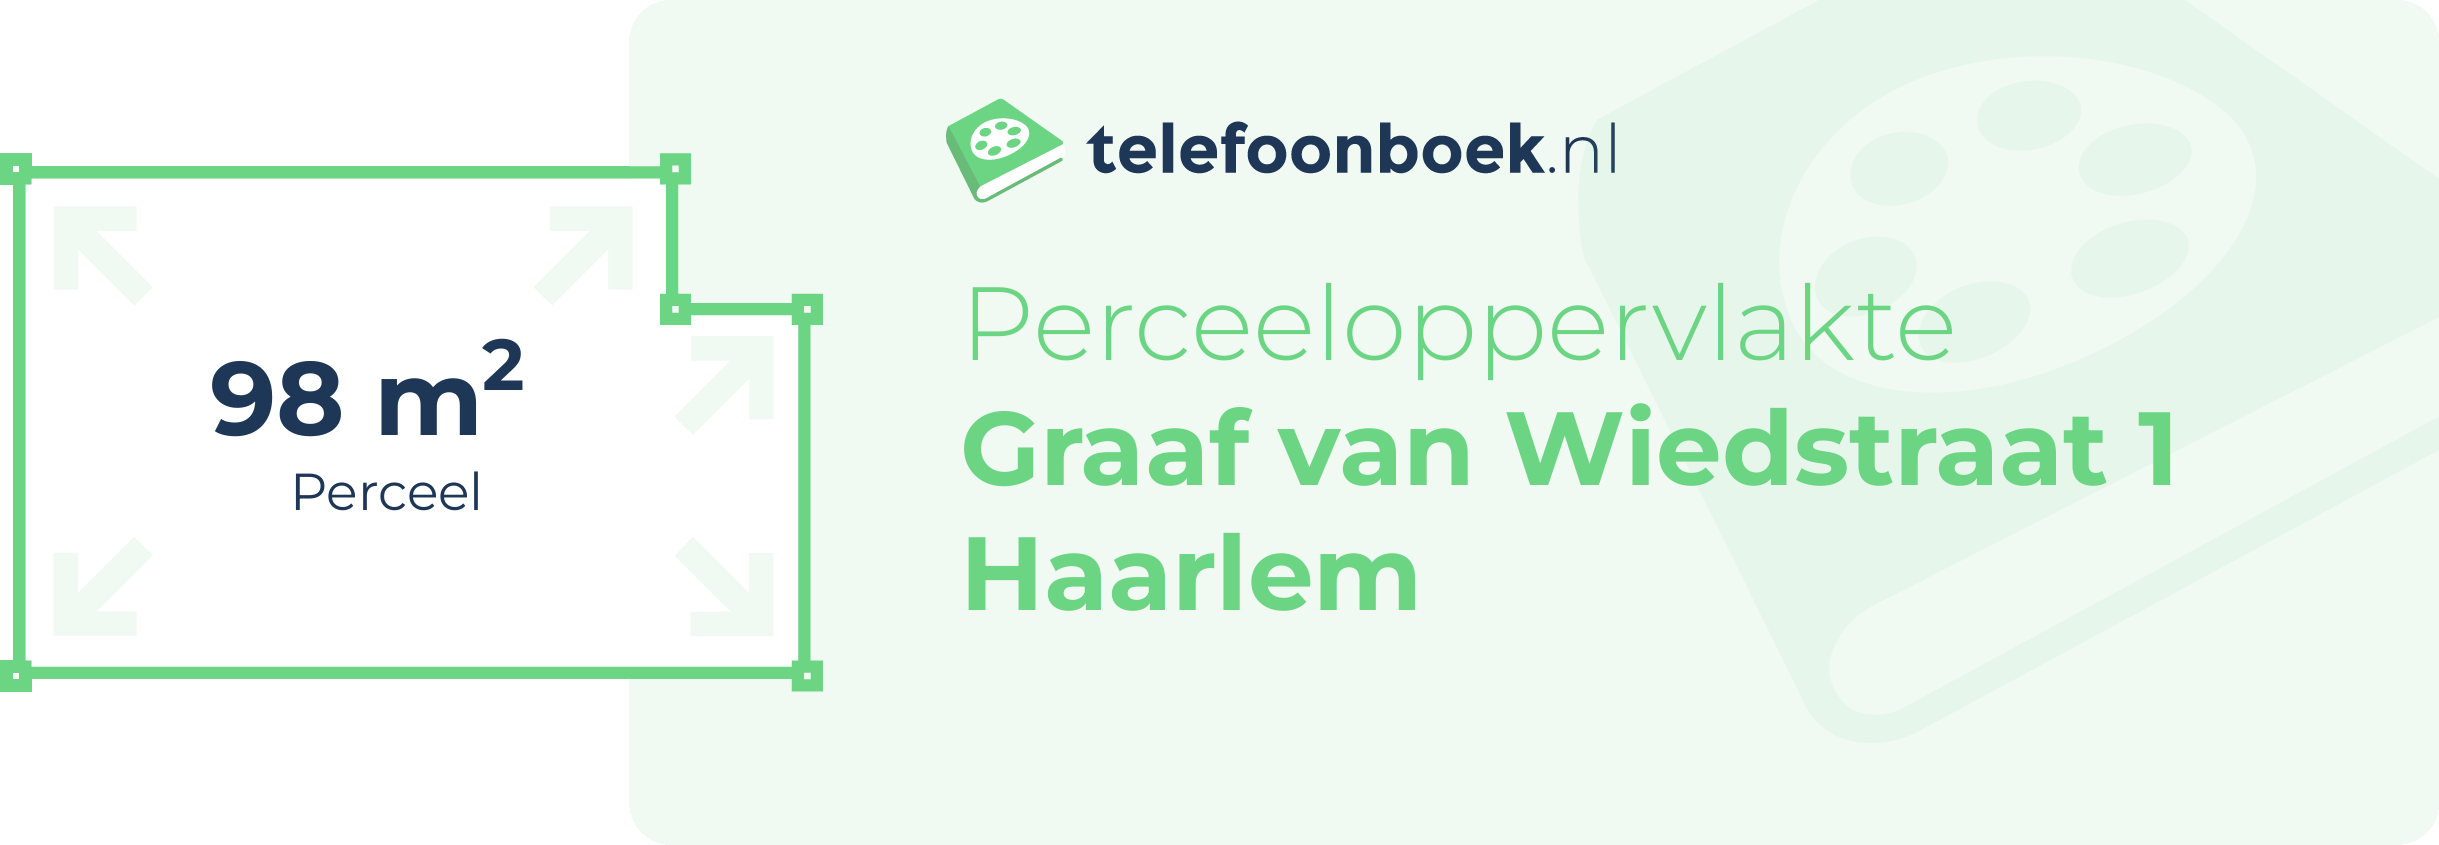 Perceeloppervlakte Graaf Van Wiedstraat 1 Haarlem